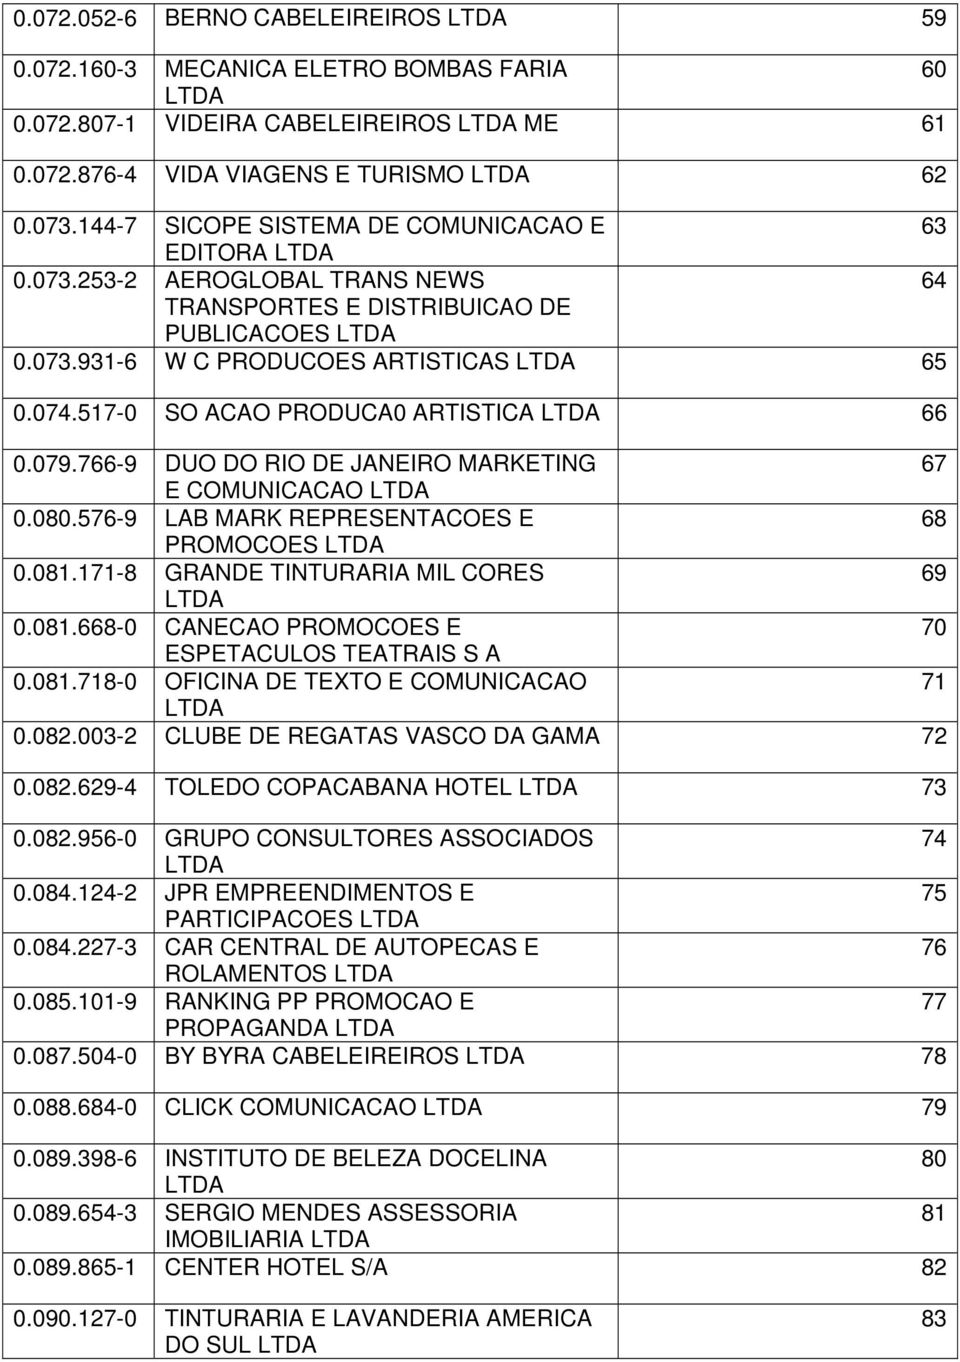 517-0 SO ACAO PRODUCA0 ARTISTICA 66 0.079.766-9 DUO DO RIO DE JANEIRO MARKETING 67 E COMUNICACAO 0.080.576-9 LAB MARK REPRESENTACOES E 68 PROMOCOES 0.081.